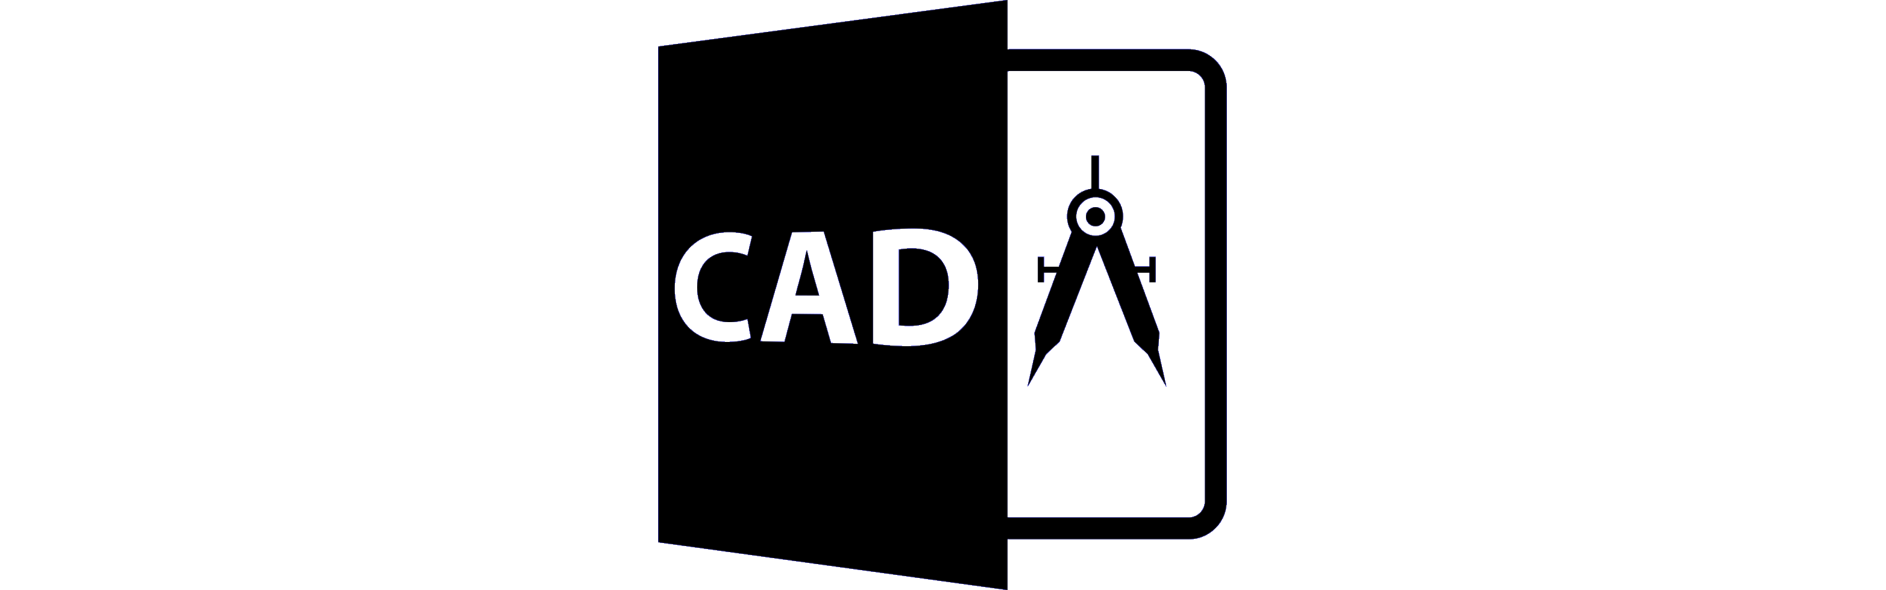 cad tools free download